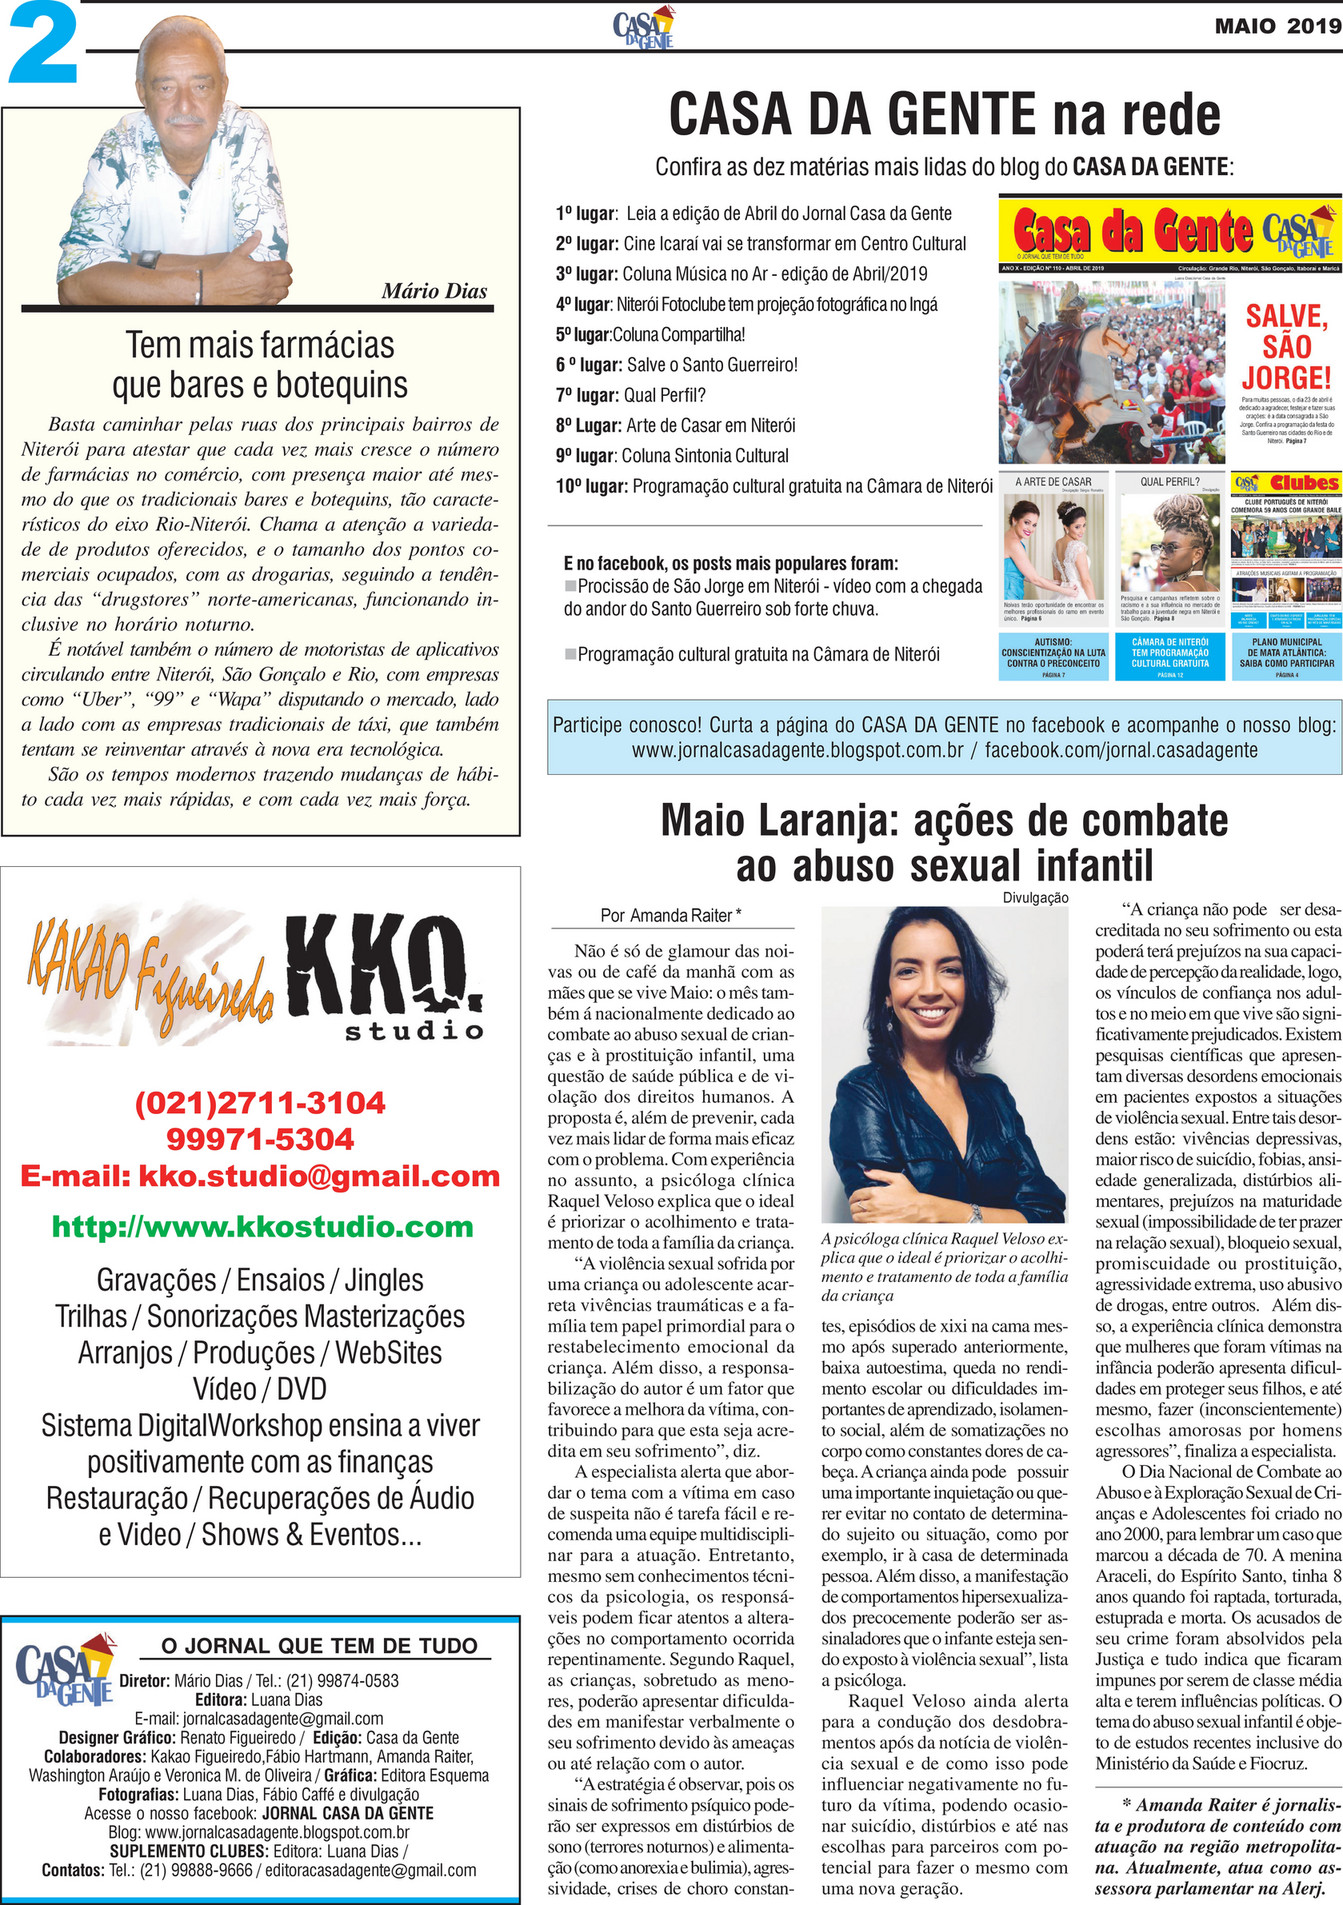 Casa da Gente Produções - Jornal Casa da Gente - Maio 2019